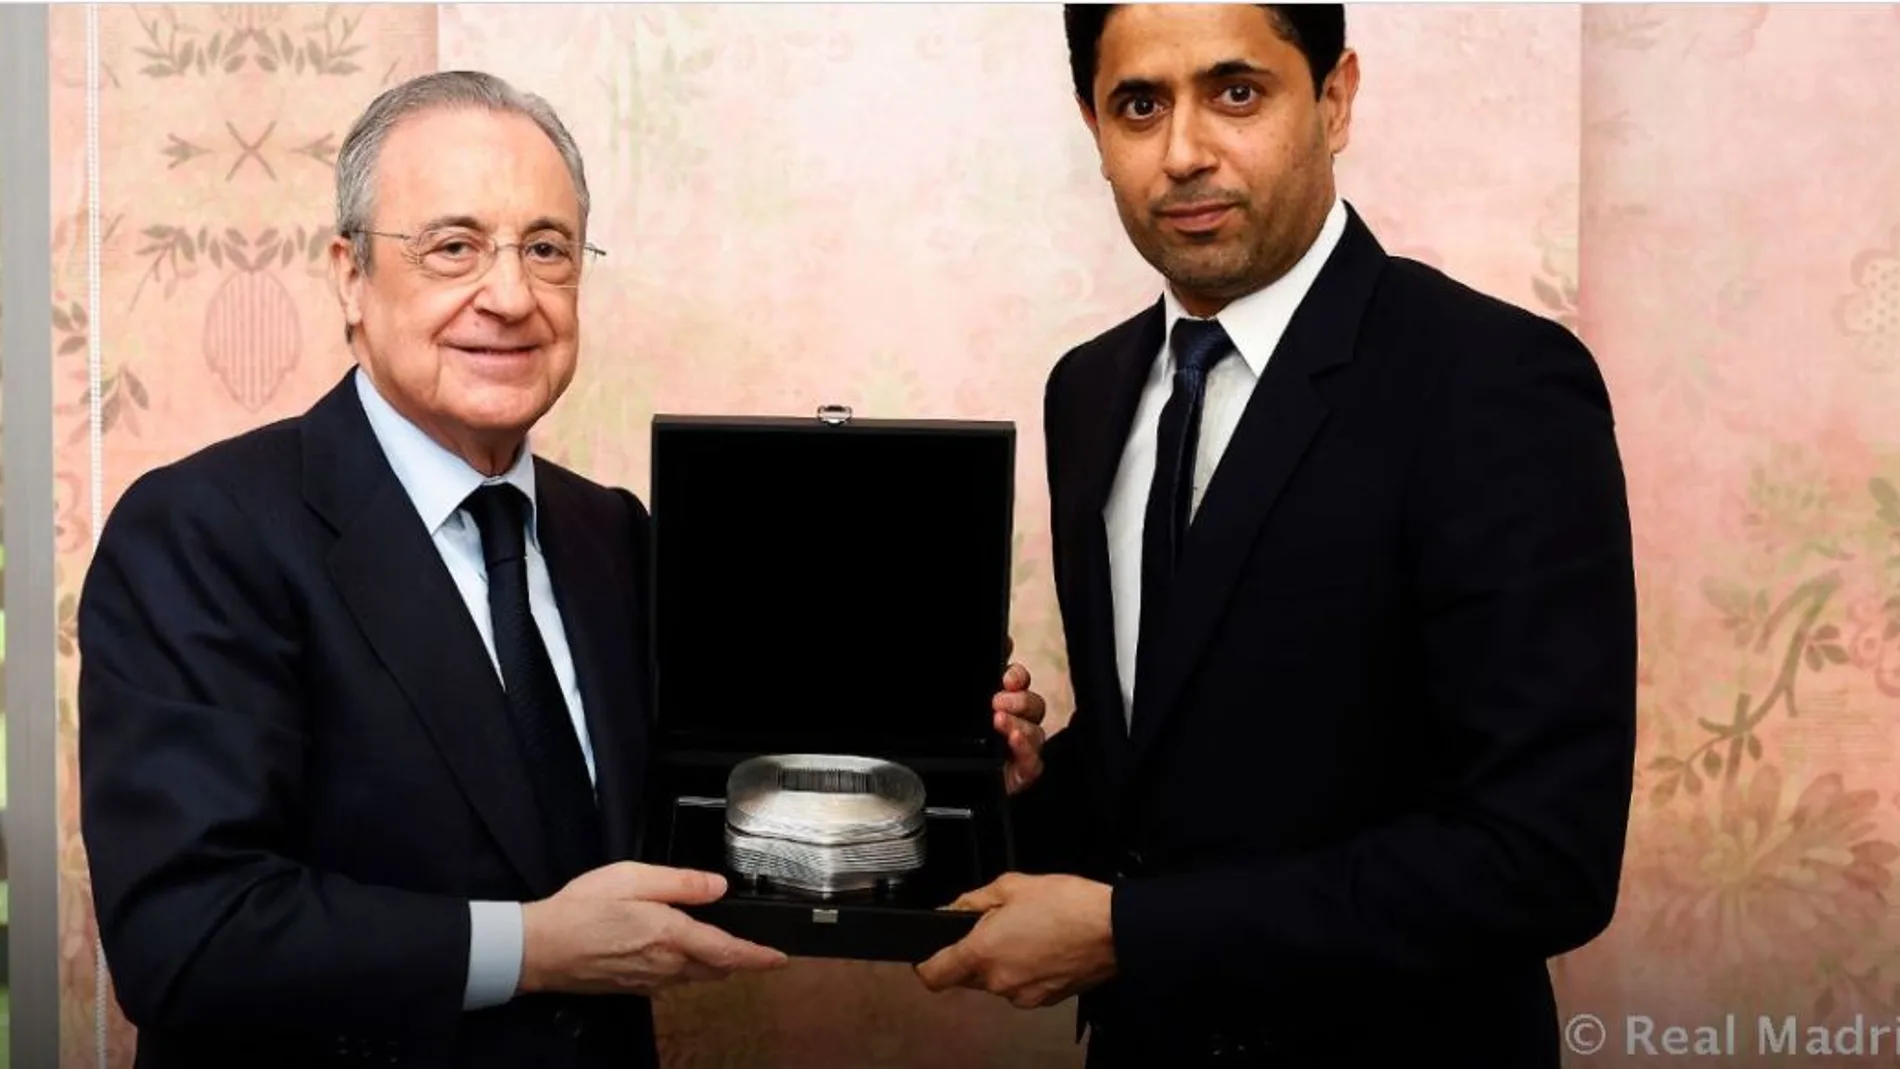 El regalo de Florentino Pérez al presidente del PSG antes del partido contra el Real Madrid/Realmadrid.com